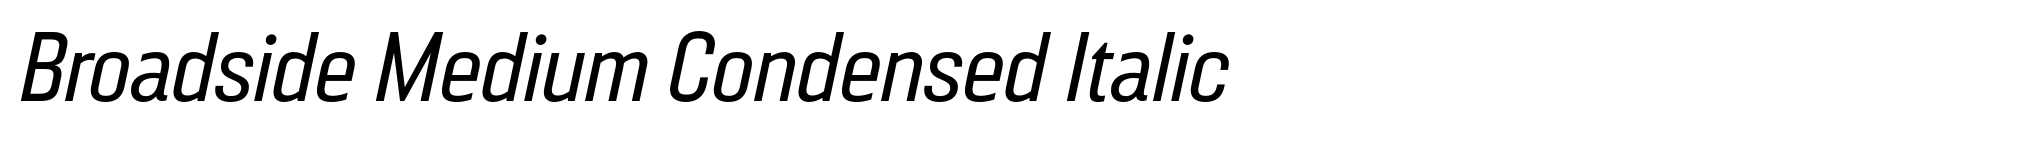 Broadside Medium Condensed Italic image